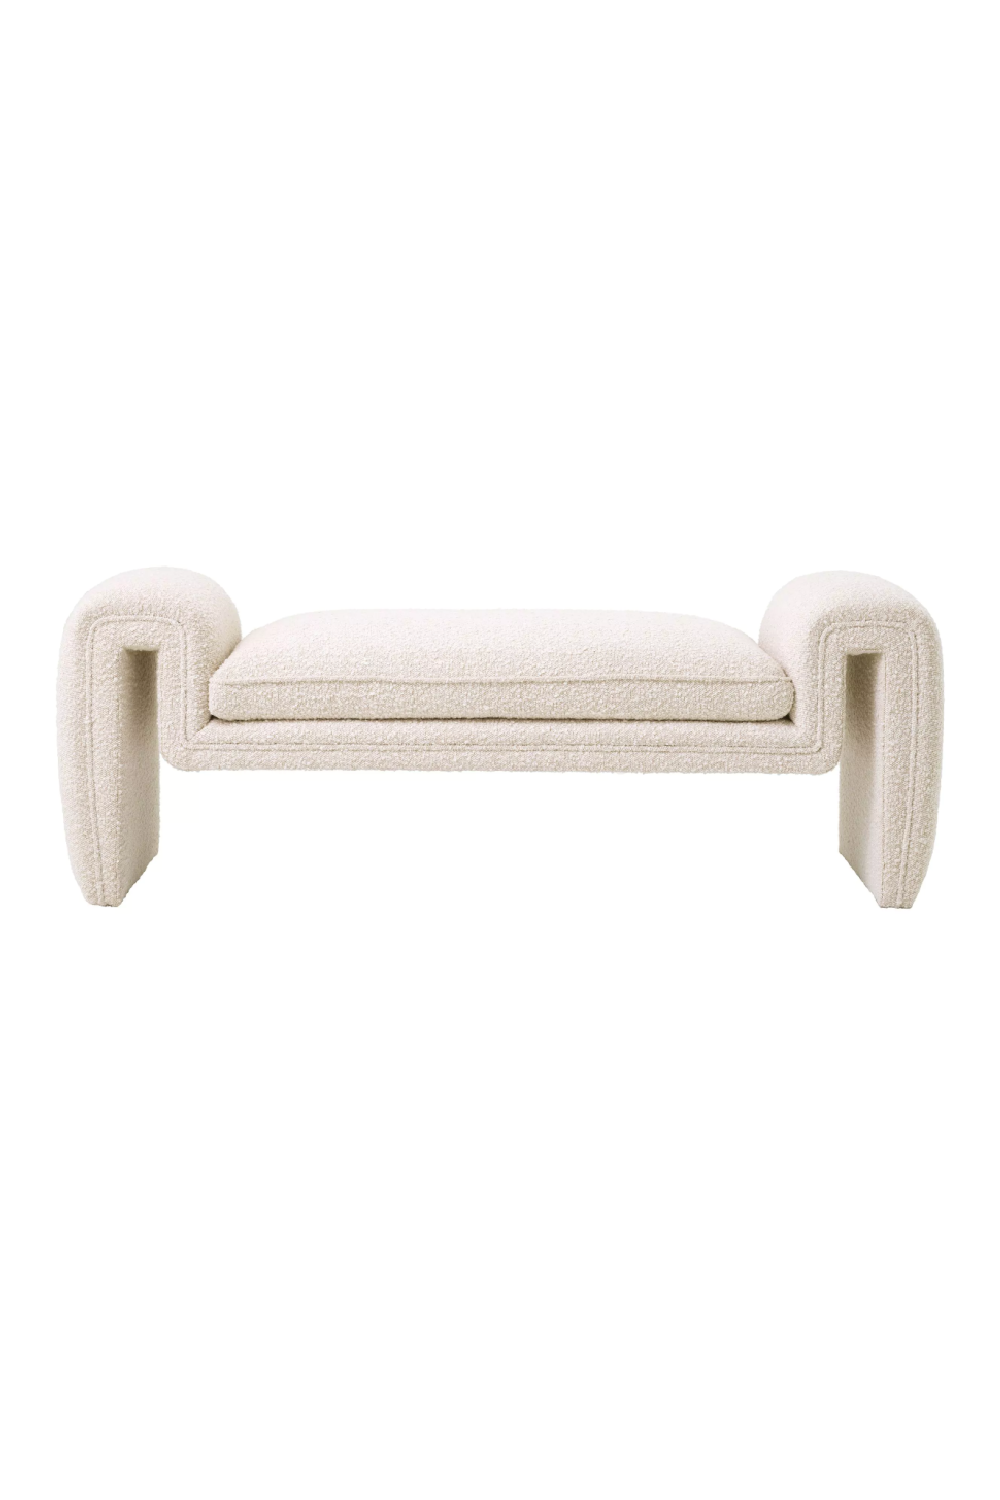 Cream Bouclé Upholstered Bench | Eichholtz Tondo | Oroa.com